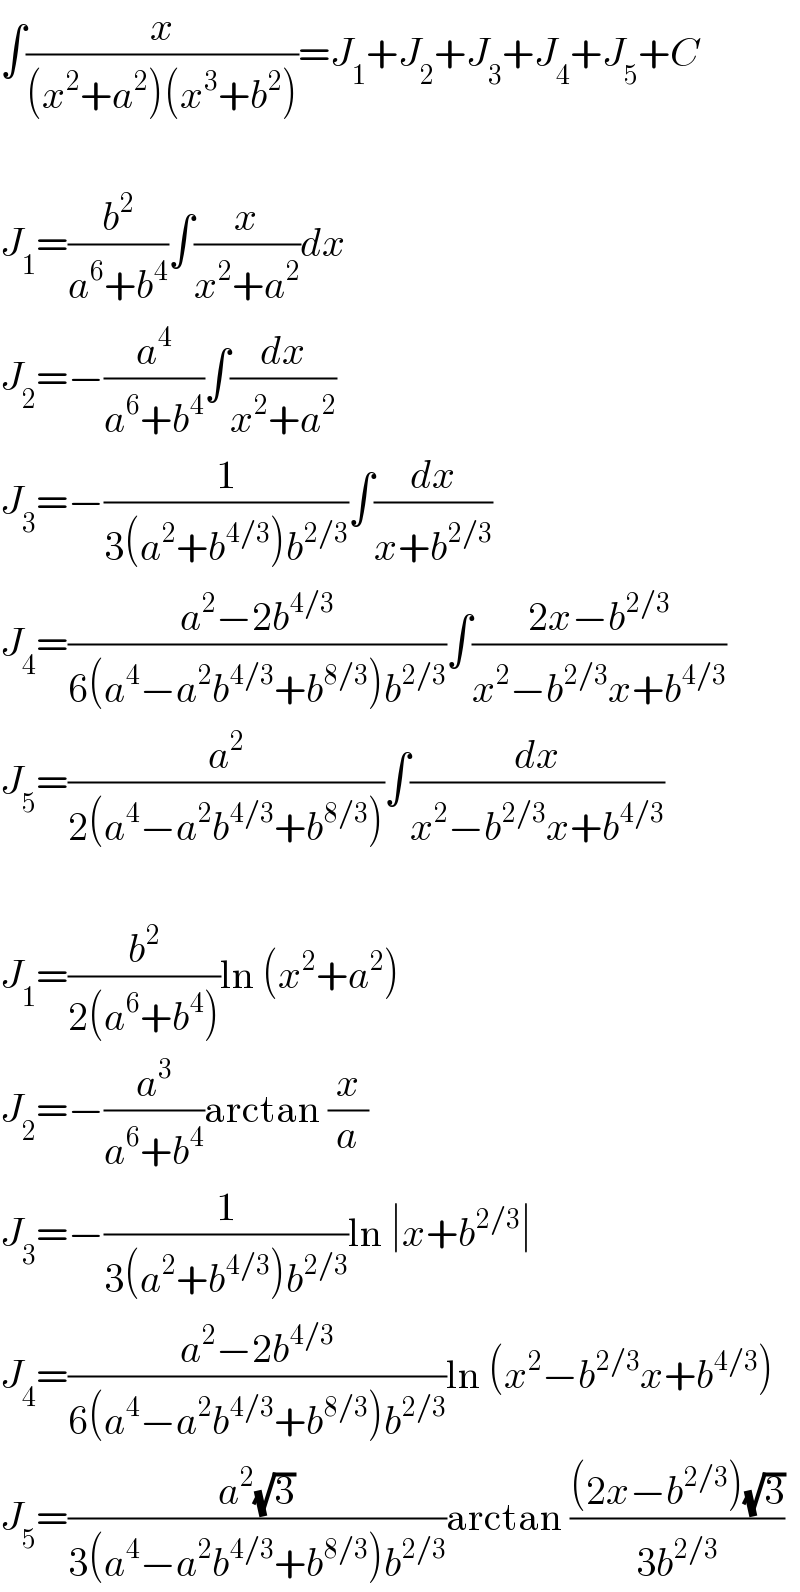 ∫(x/((x^2 +a^2 )(x^3 +b^2 )))=J_1 +J_2 +J_3 +J_4 +J_5 +C    J_1 =(b^2 /(a^6 +b^4 ))∫(x/(x^2 +a^2 ))dx  J_2 =−(a^4 /(a^6 +b^4 ))∫(dx/(x^2 +a^2 ))  J_3 =−(1/(3(a^2 +b^(4/3) )b^(2/3) ))∫(dx/(x+b^(2/3) ))  J_4 =((a^2 −2b^(4/3) )/(6(a^4 −a^2 b^(4/3) +b^(8/3) )b^(2/3) ))∫((2x−b^(2/3) )/(x^2 −b^(2/3) x+b^(4/3) ))  J_5 =(a^2 /(2(a^4 −a^2 b^(4/3) +b^(8/3) )))∫(dx/(x^2 −b^(2/3) x+b^(4/3) ))    J_1 =(b^2 /(2(a^6 +b^4 )))ln (x^2 +a^2 )  J_2 =−(a^3 /(a^6 +b^4 ))arctan (x/a)  J_3 =−(1/(3(a^2 +b^(4/3) )b^(2/3) ))ln ∣x+b^(2/3) ∣  J_4 =((a^2 −2b^(4/3) )/(6(a^4 −a^2 b^(4/3) +b^(8/3) )b^(2/3) ))ln (x^2 −b^(2/3) x+b^(4/3) )  J_5 =((a^2 (√3))/(3(a^4 −a^2 b^(4/3) +b^(8/3) )b^(2/3) ))arctan (((2x−b^(2/3) )(√3))/(3b^(2/3) ))  